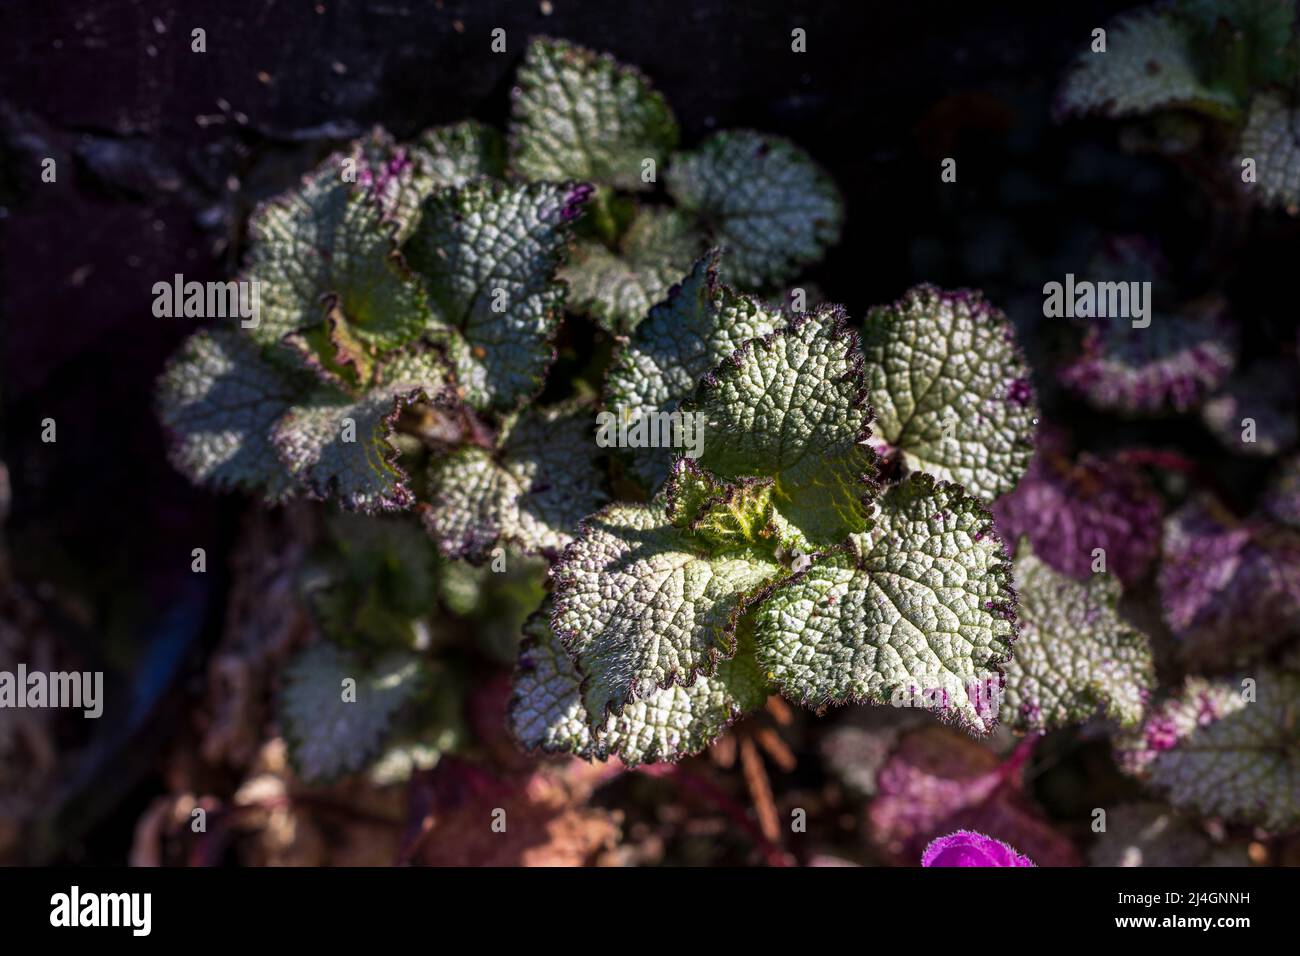 Lamium maculatum ‘Beacon Silver’ Stock Photo